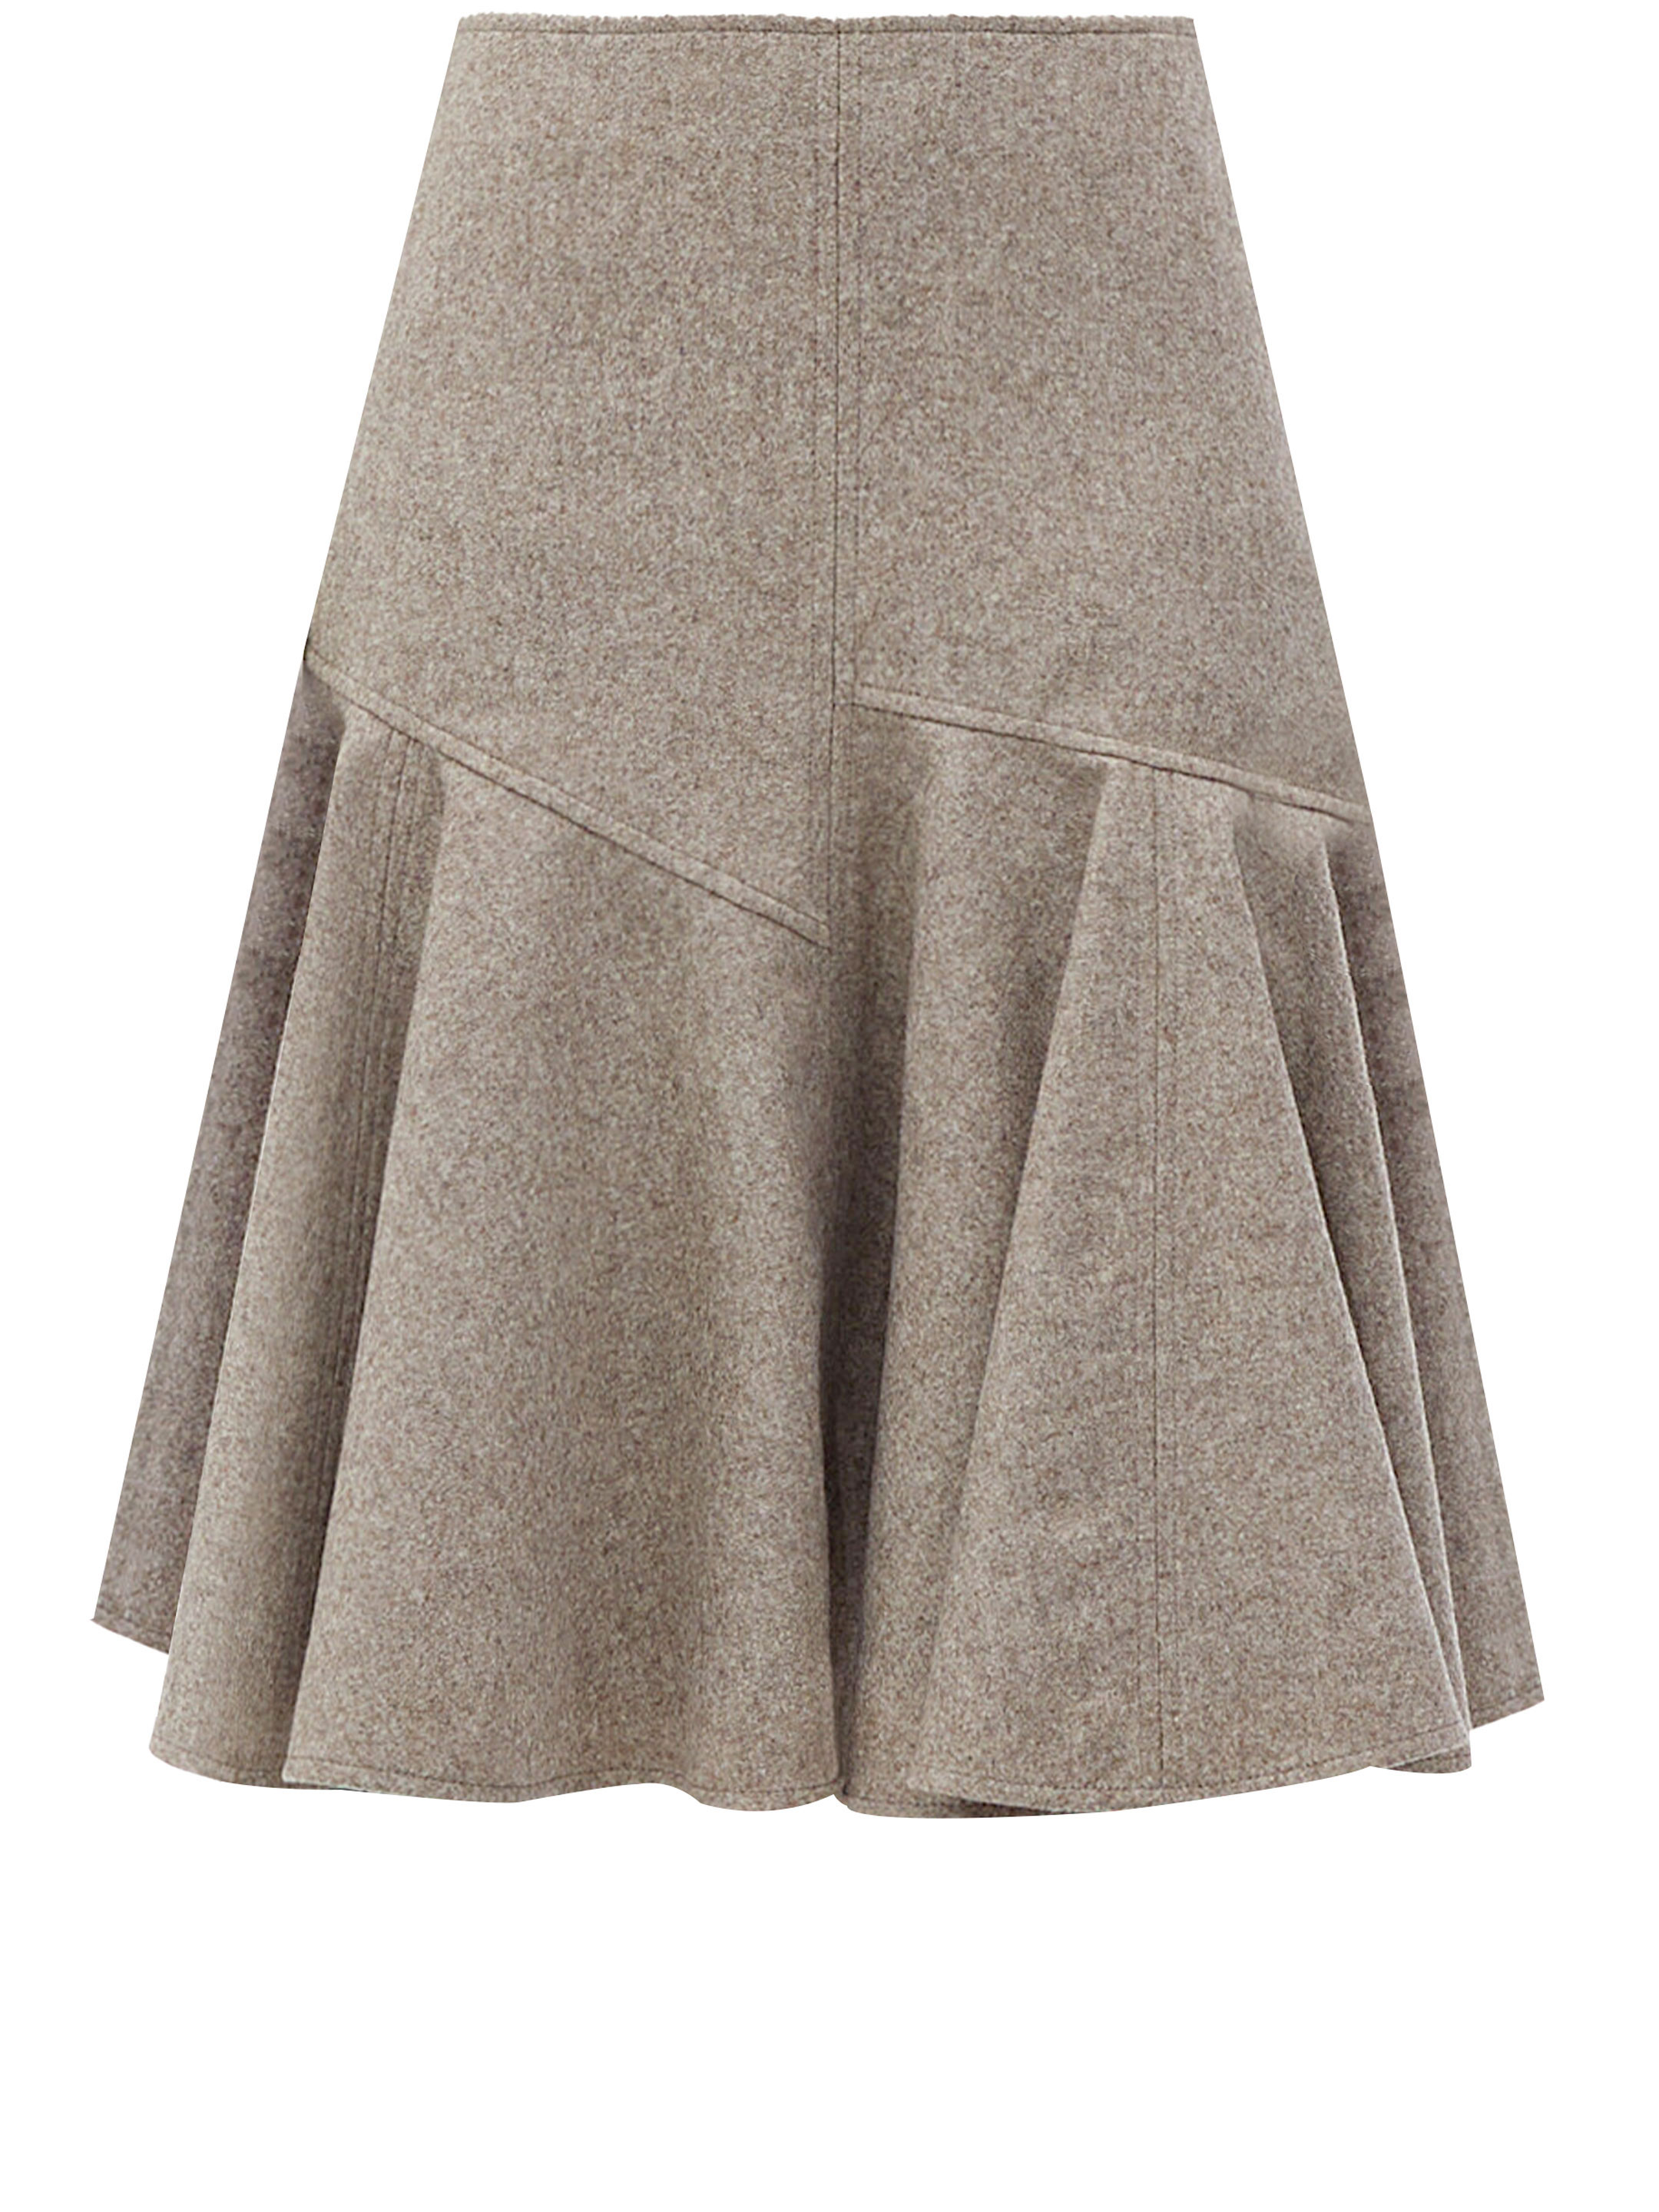 Юбка Bottega Veneta Wool flannel, бежевый юбка glenfield с молнией сзади 44 размер